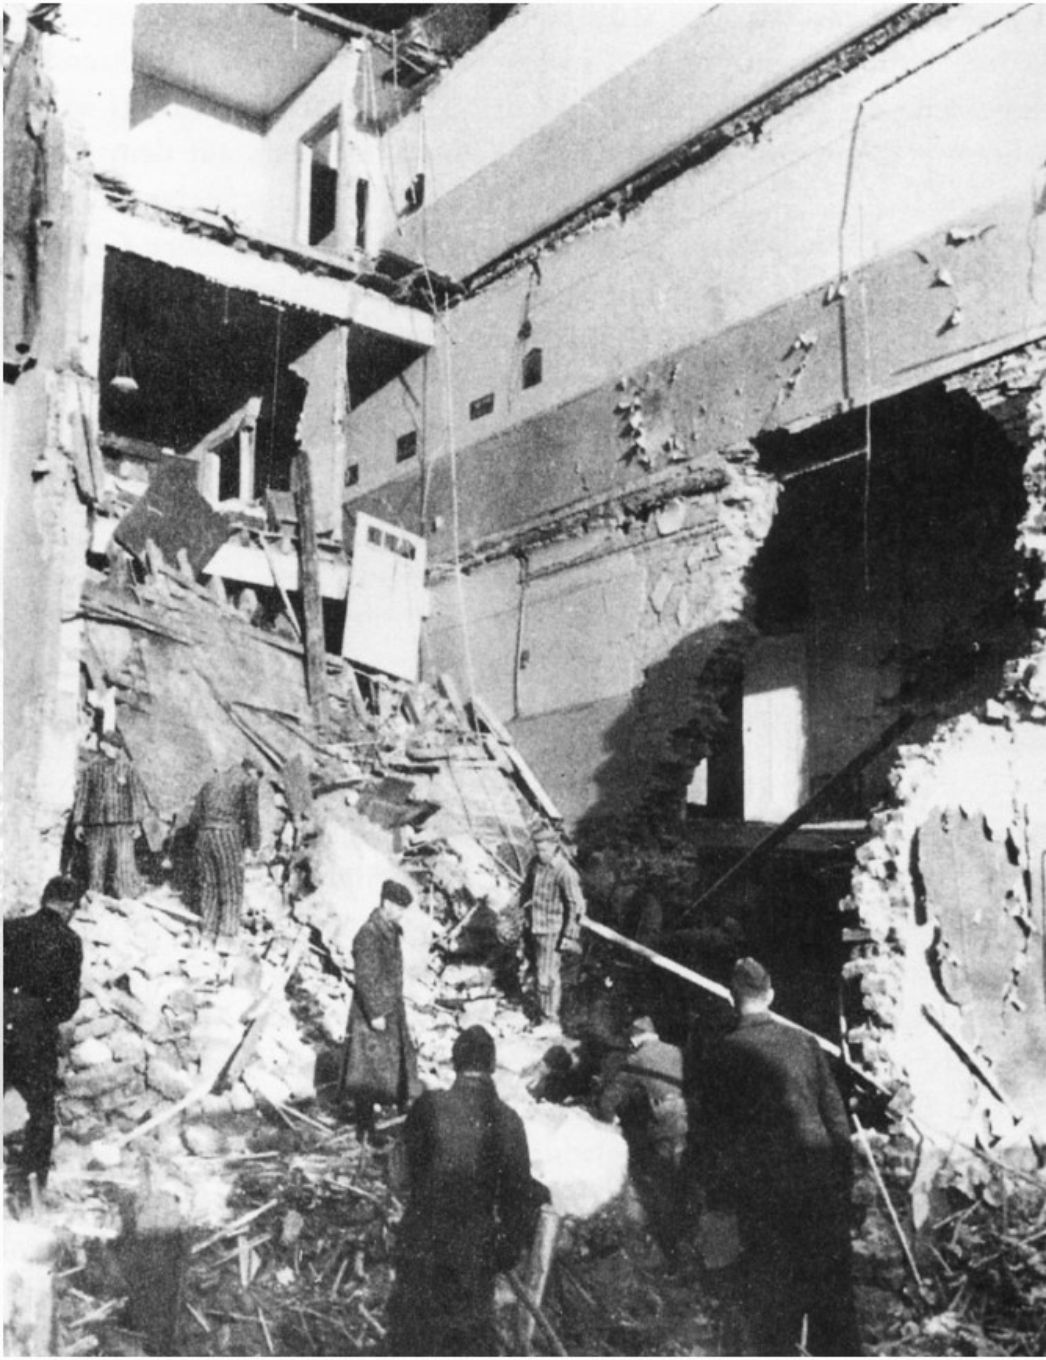 KZ-Häftlinge bei Aufräumarbeiten nach dem Bombenangriff. Zu sehen sind Mehrere Männer in Häftlingskleidung die Schutt und Trümmer aus einem zerbombten Gebäude schaufeln.